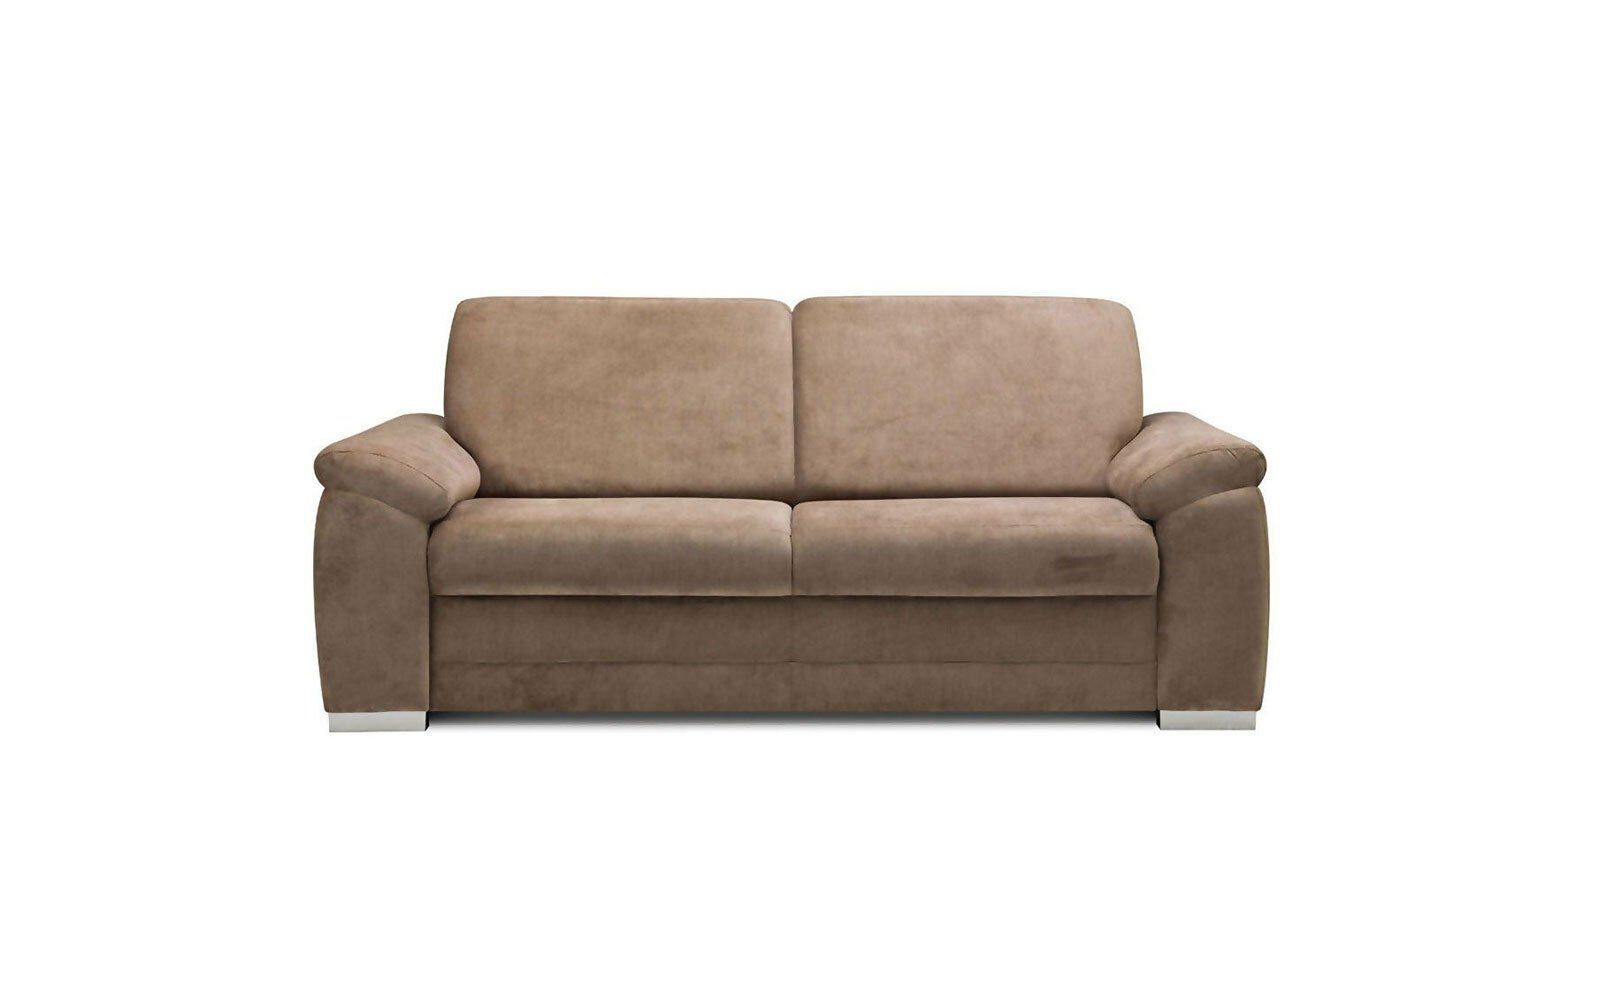 JVmoebel 3-Sitzer Luxus Edel, in Sofa Couch Braune Sofa Luxus Moderne Polstermöbel Made Europe